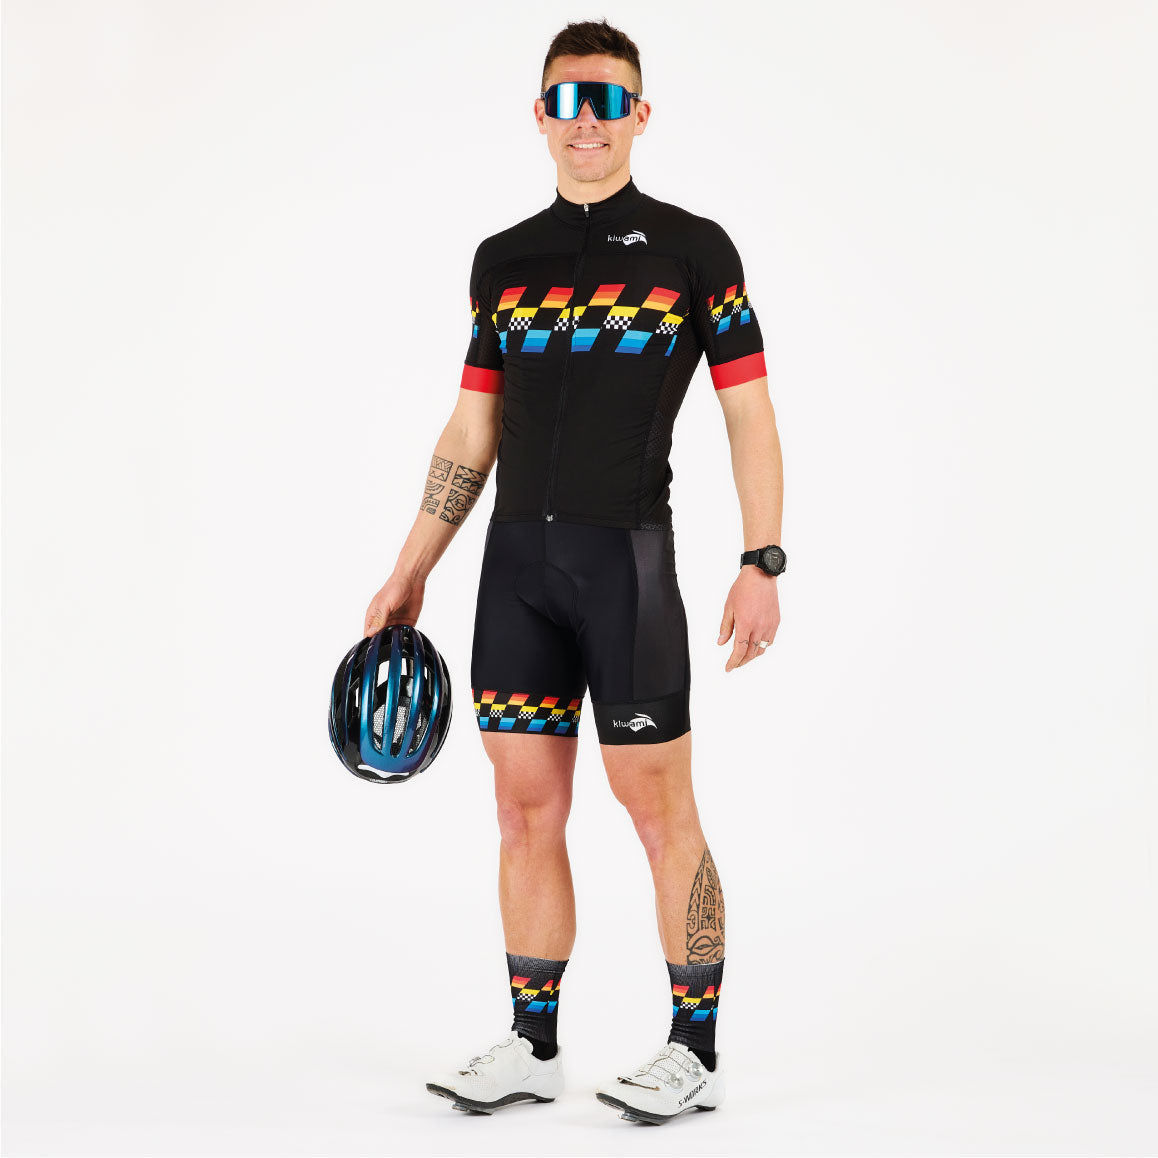 tenue de cyclisme homme, ensemble maillot vélo et cuissard vélo, conçu pour la saison printemps été